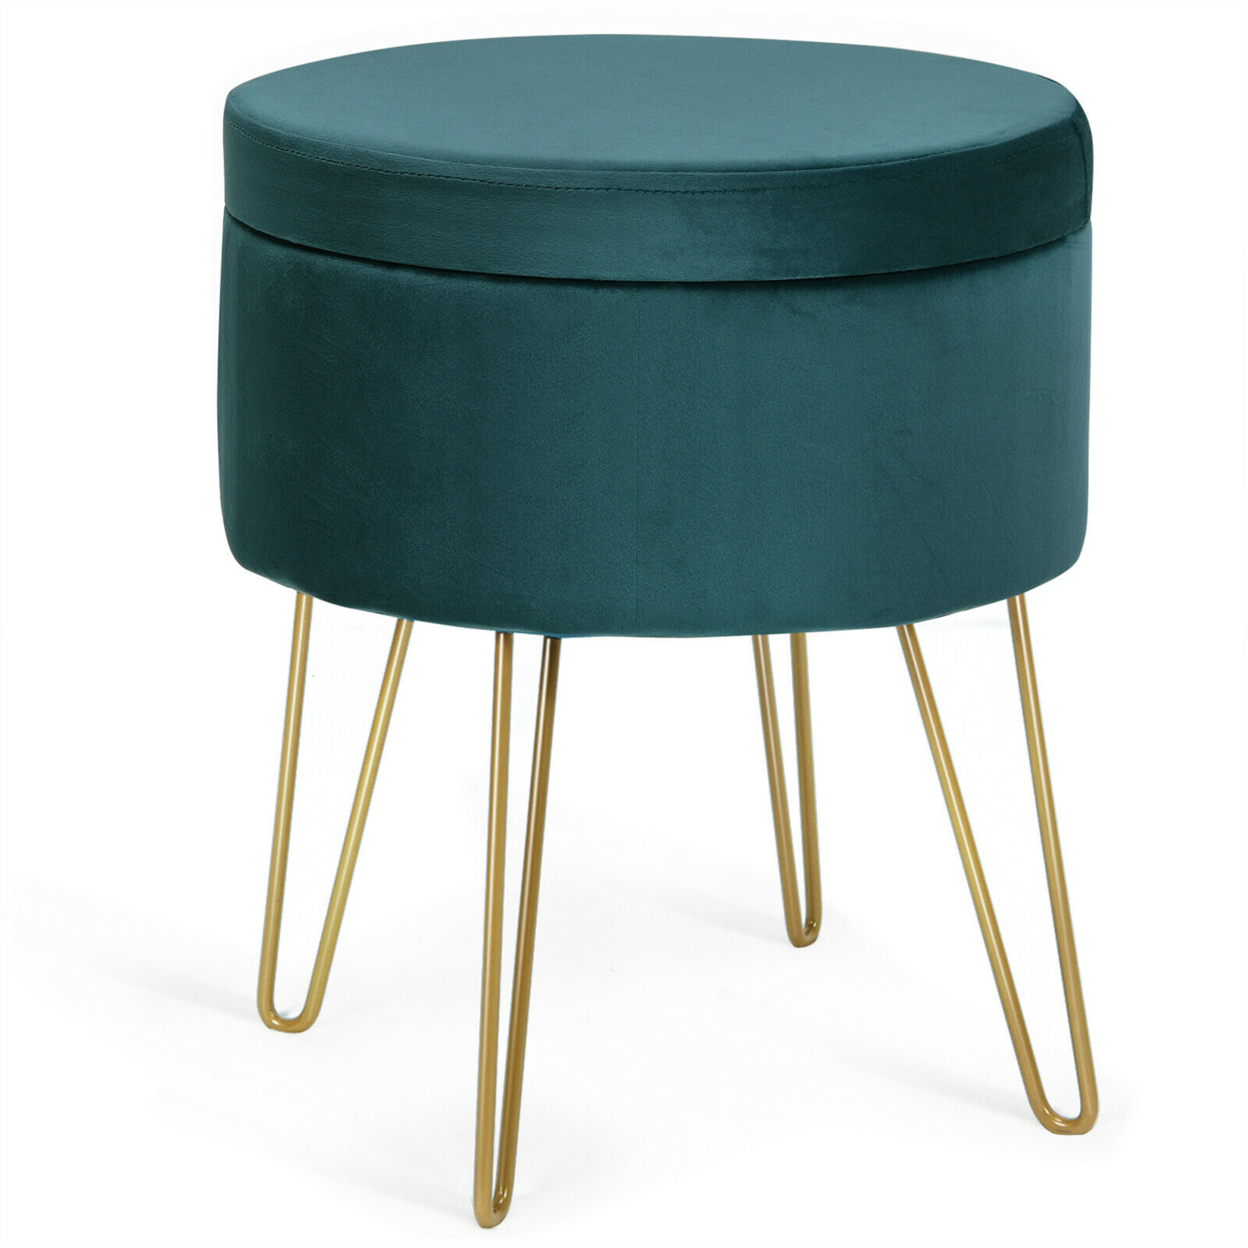 Round Velvet Storage Ottoman Footrest Stool Vanity Chair W/Metal Legs - Dark Green